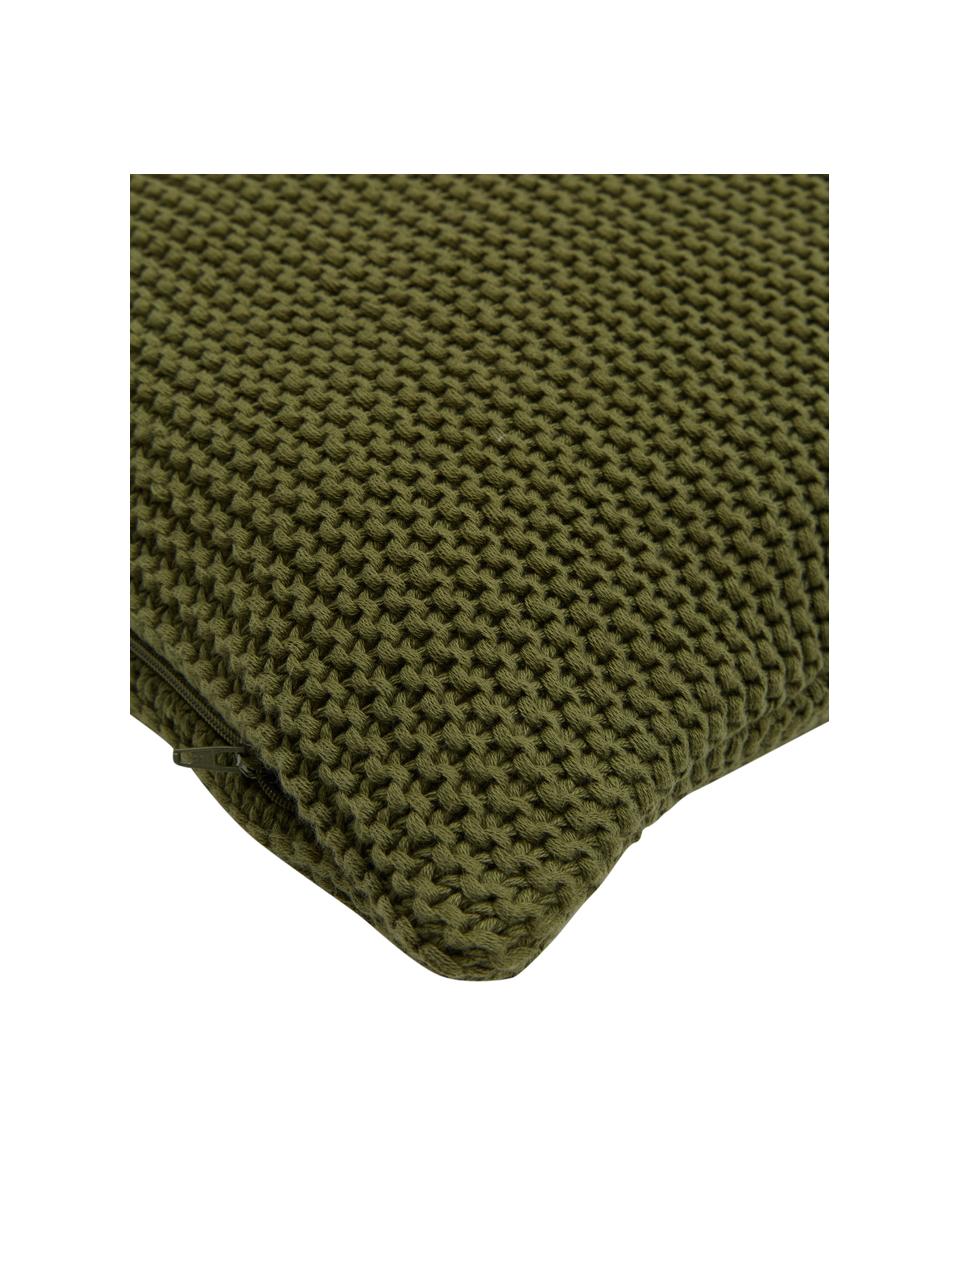 Federa arredo a maglia in cotone organico verde Adalyn, 100% cotone organico, certificato GOTS, Verde, Larg. 40 x Lung. 40 cm